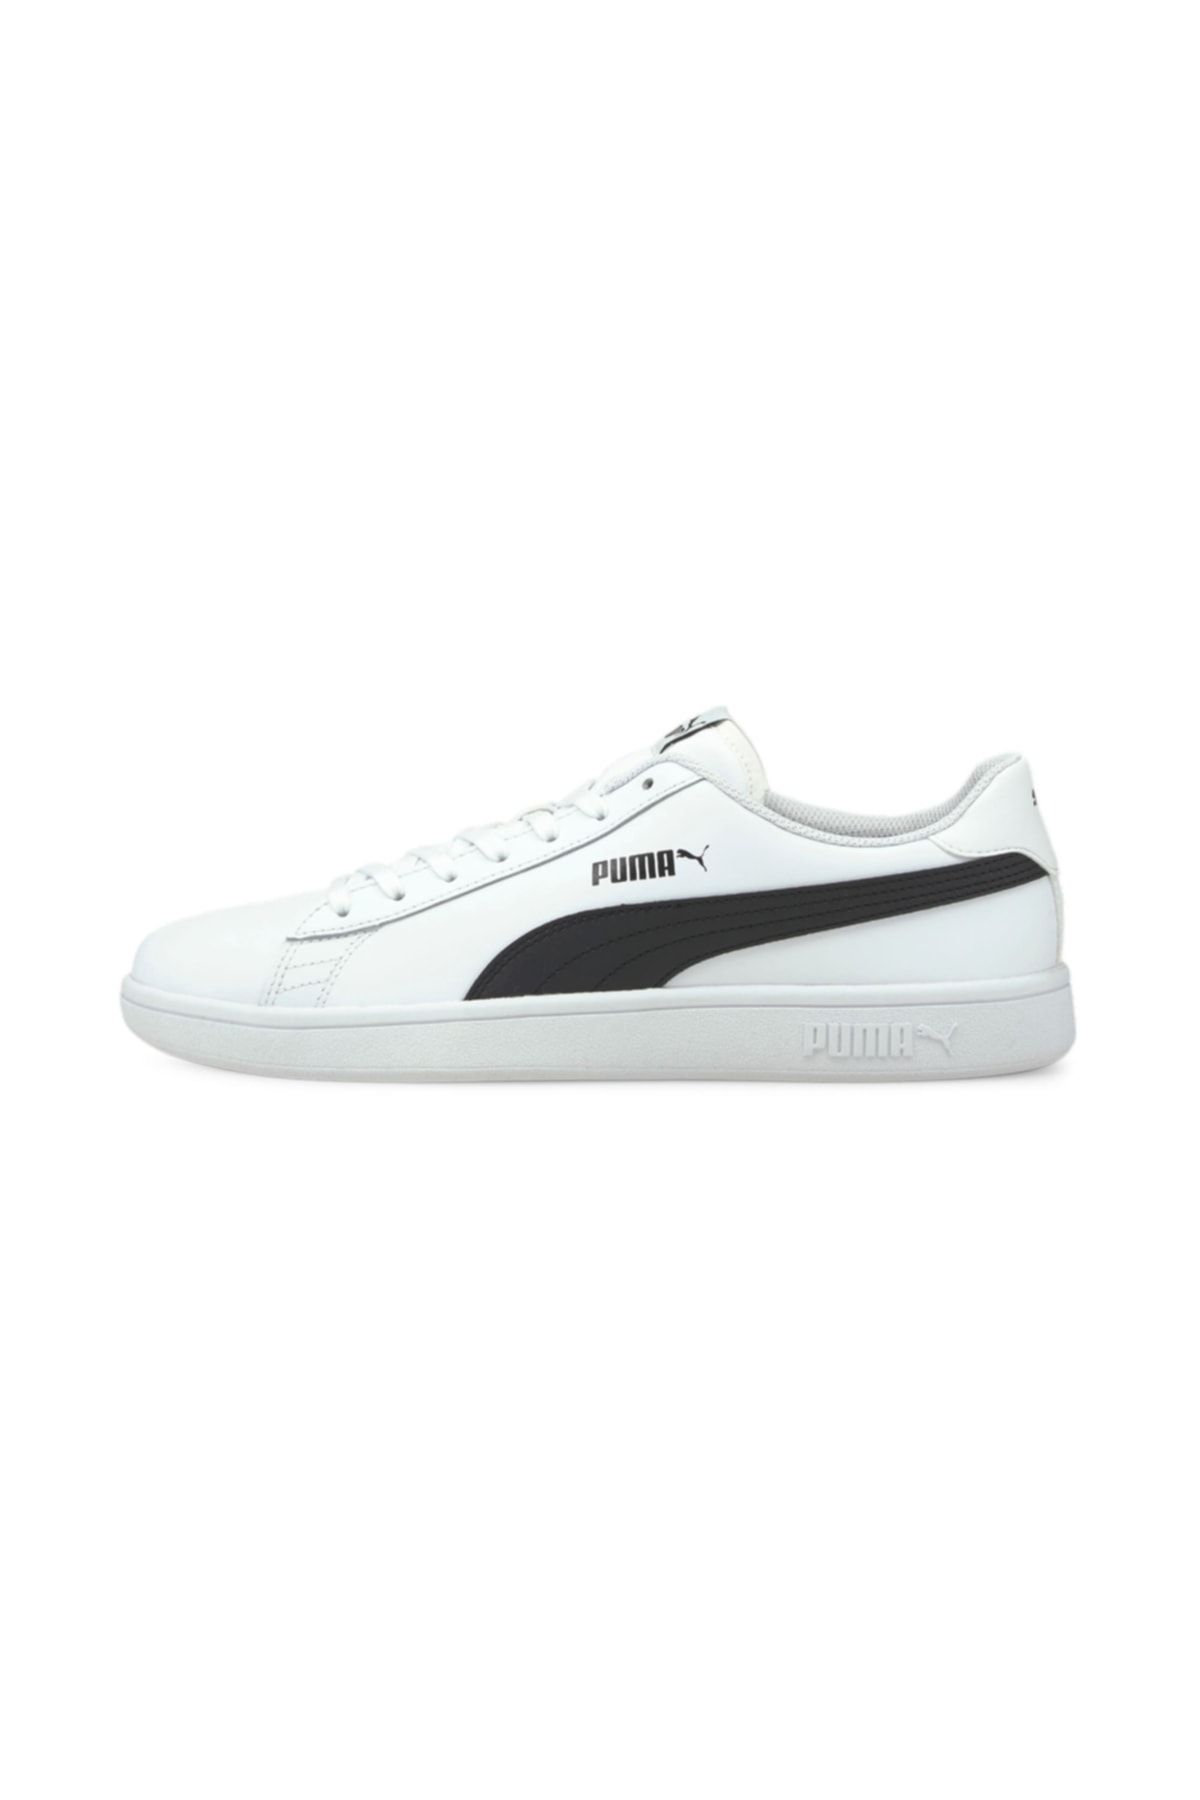 Puma Smash V2 L - Beyaz Unisex Sneaker